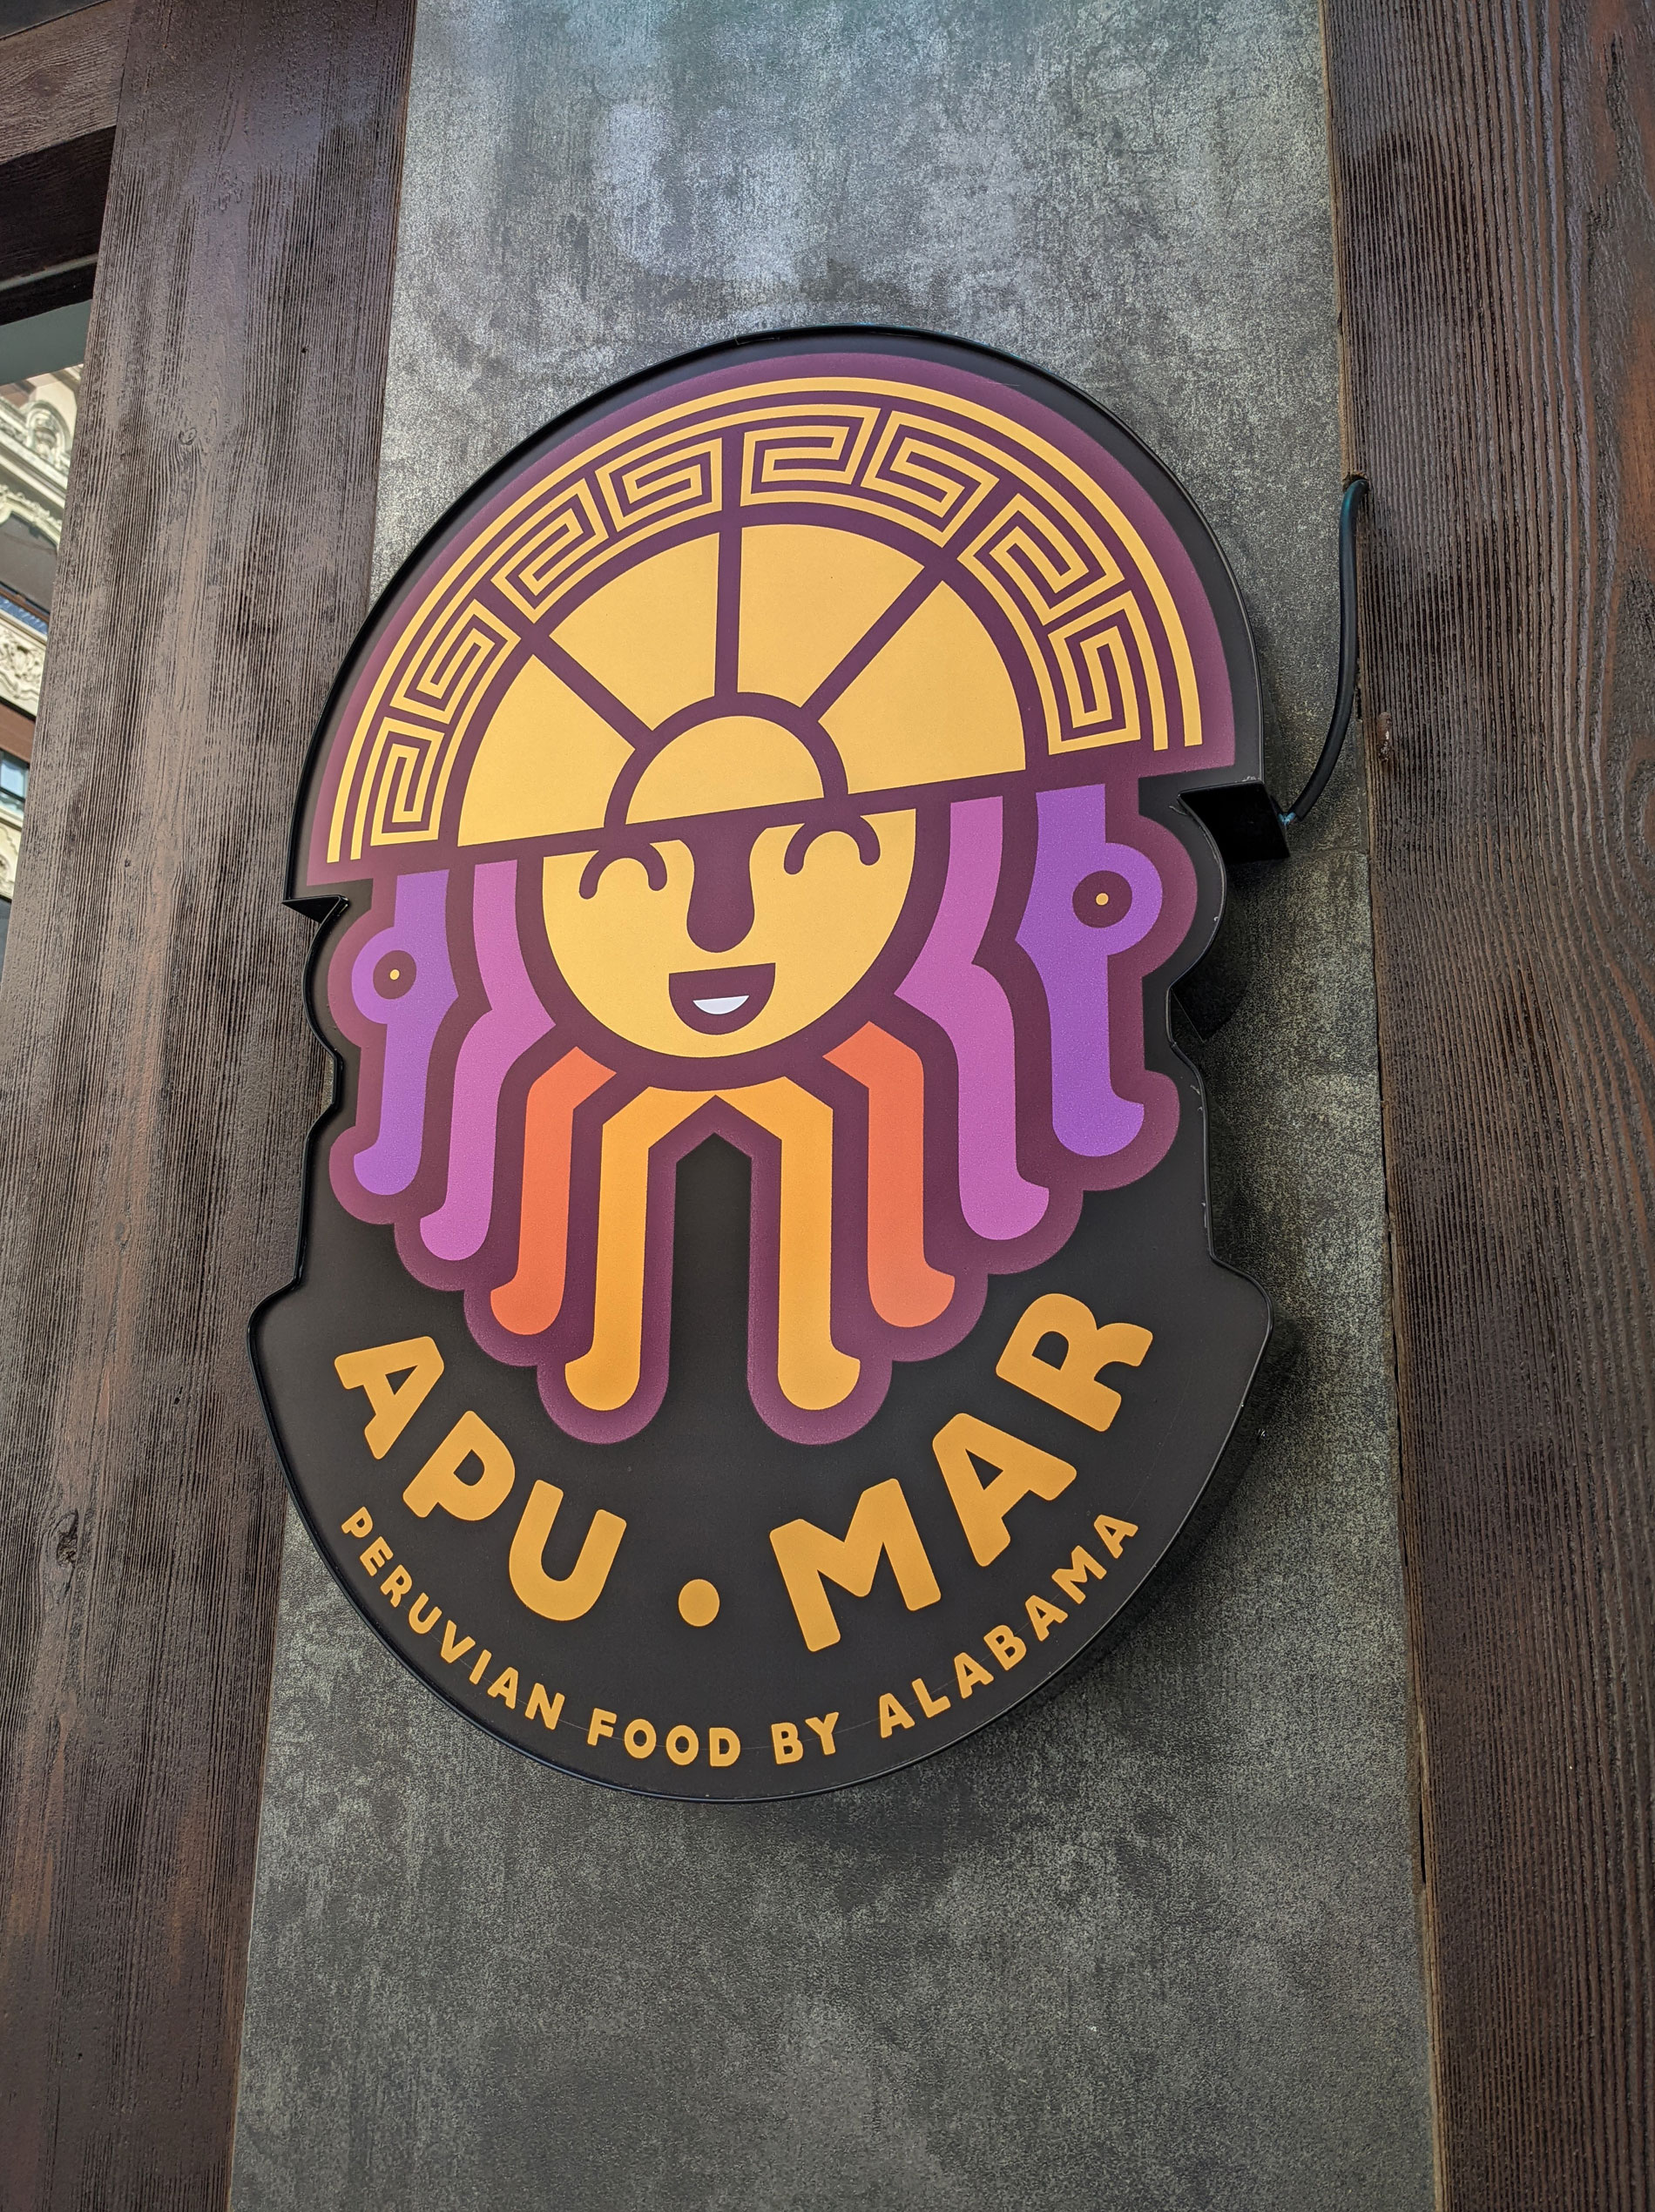 Diseño rótulo Apu Mar